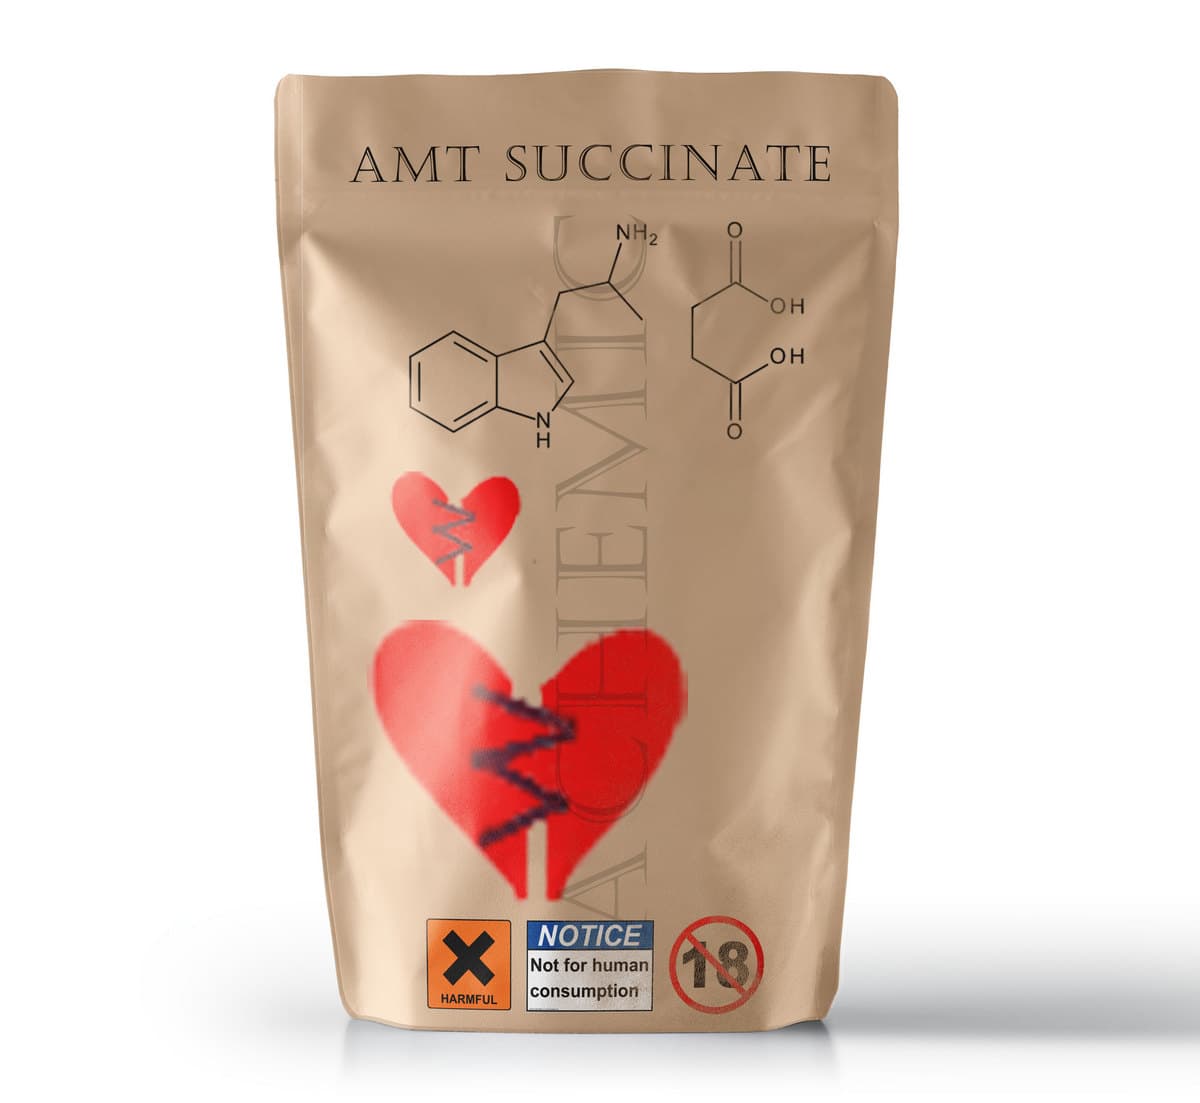 aMT-Succinate